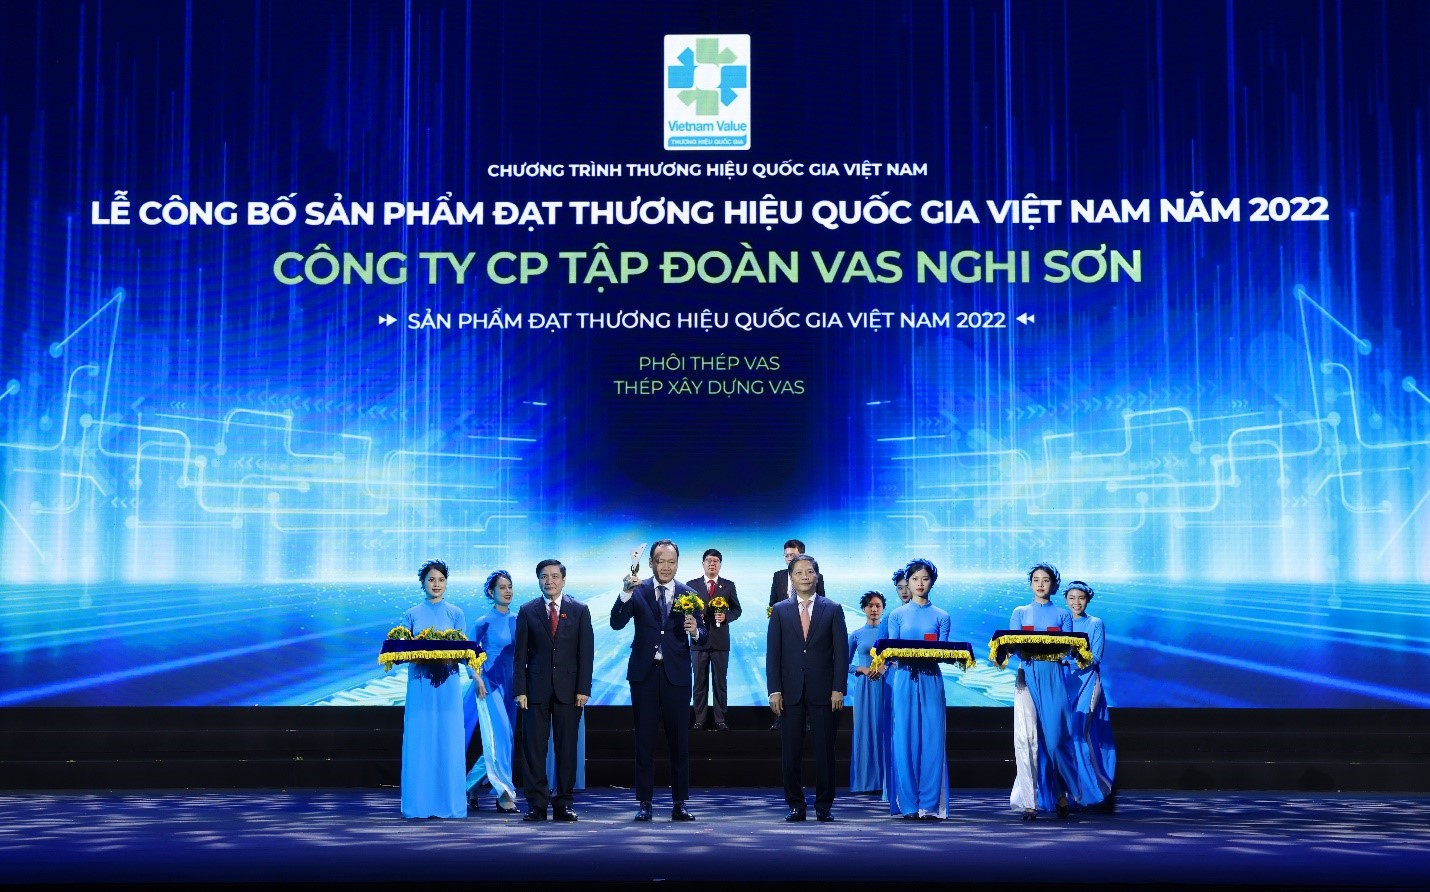 VAS tự hào đón nhận danh hiệu “Thương hiệu Quốc gia Việt Nam năm 2022” - 1